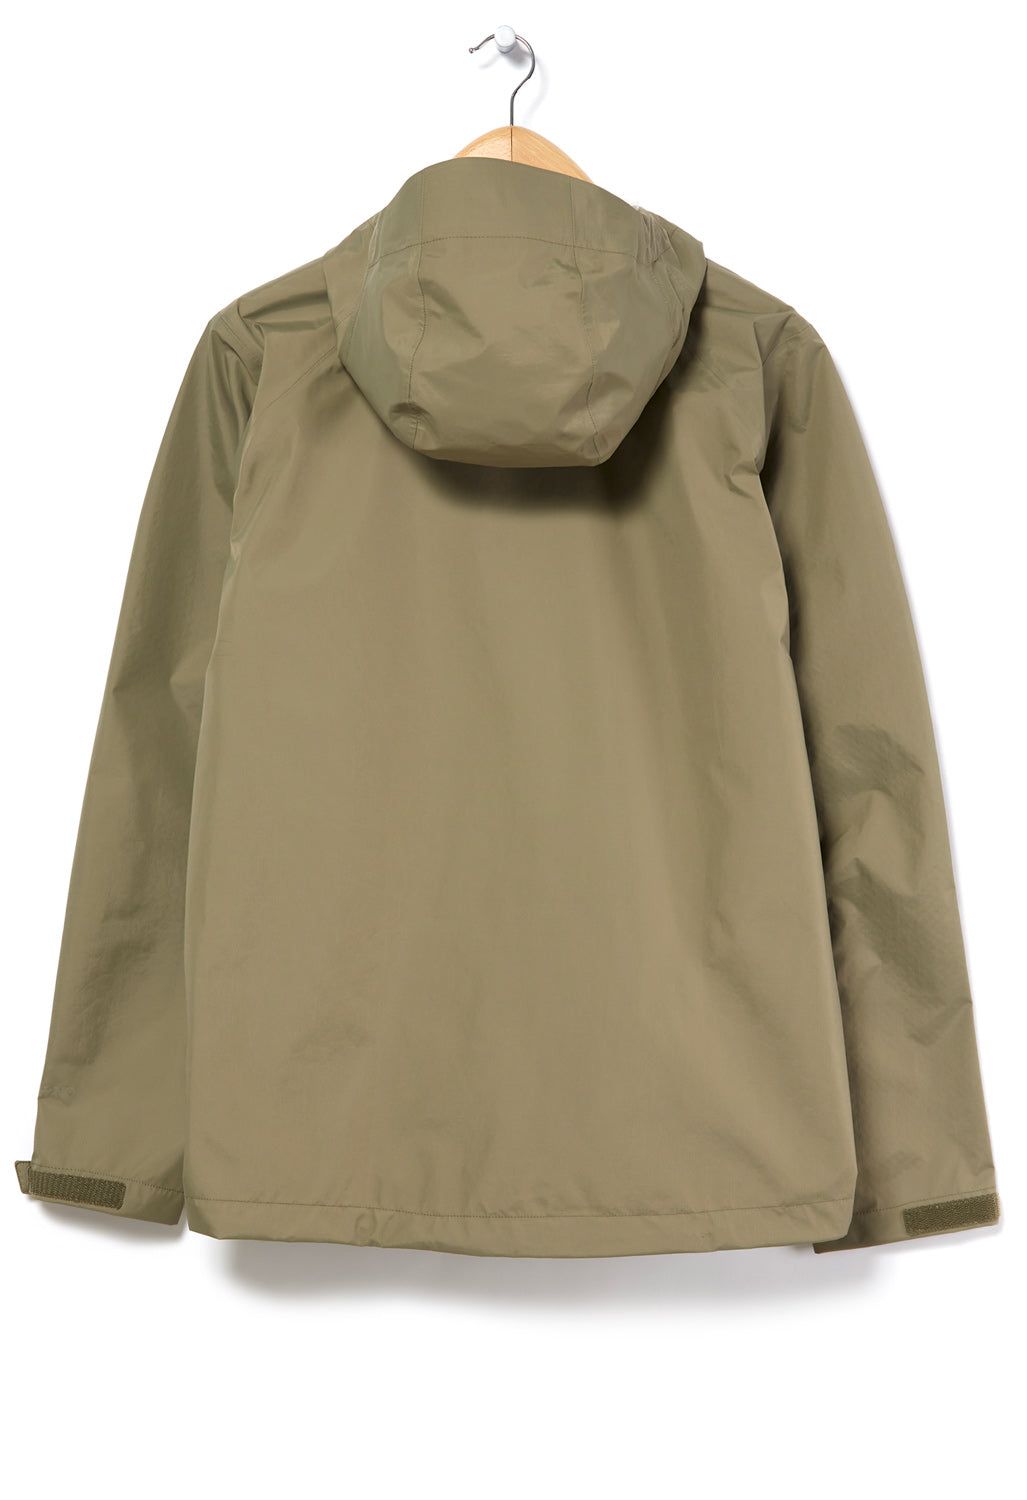 Patagonia Men's Torrentshell 3L Jacket - Sage Khaki